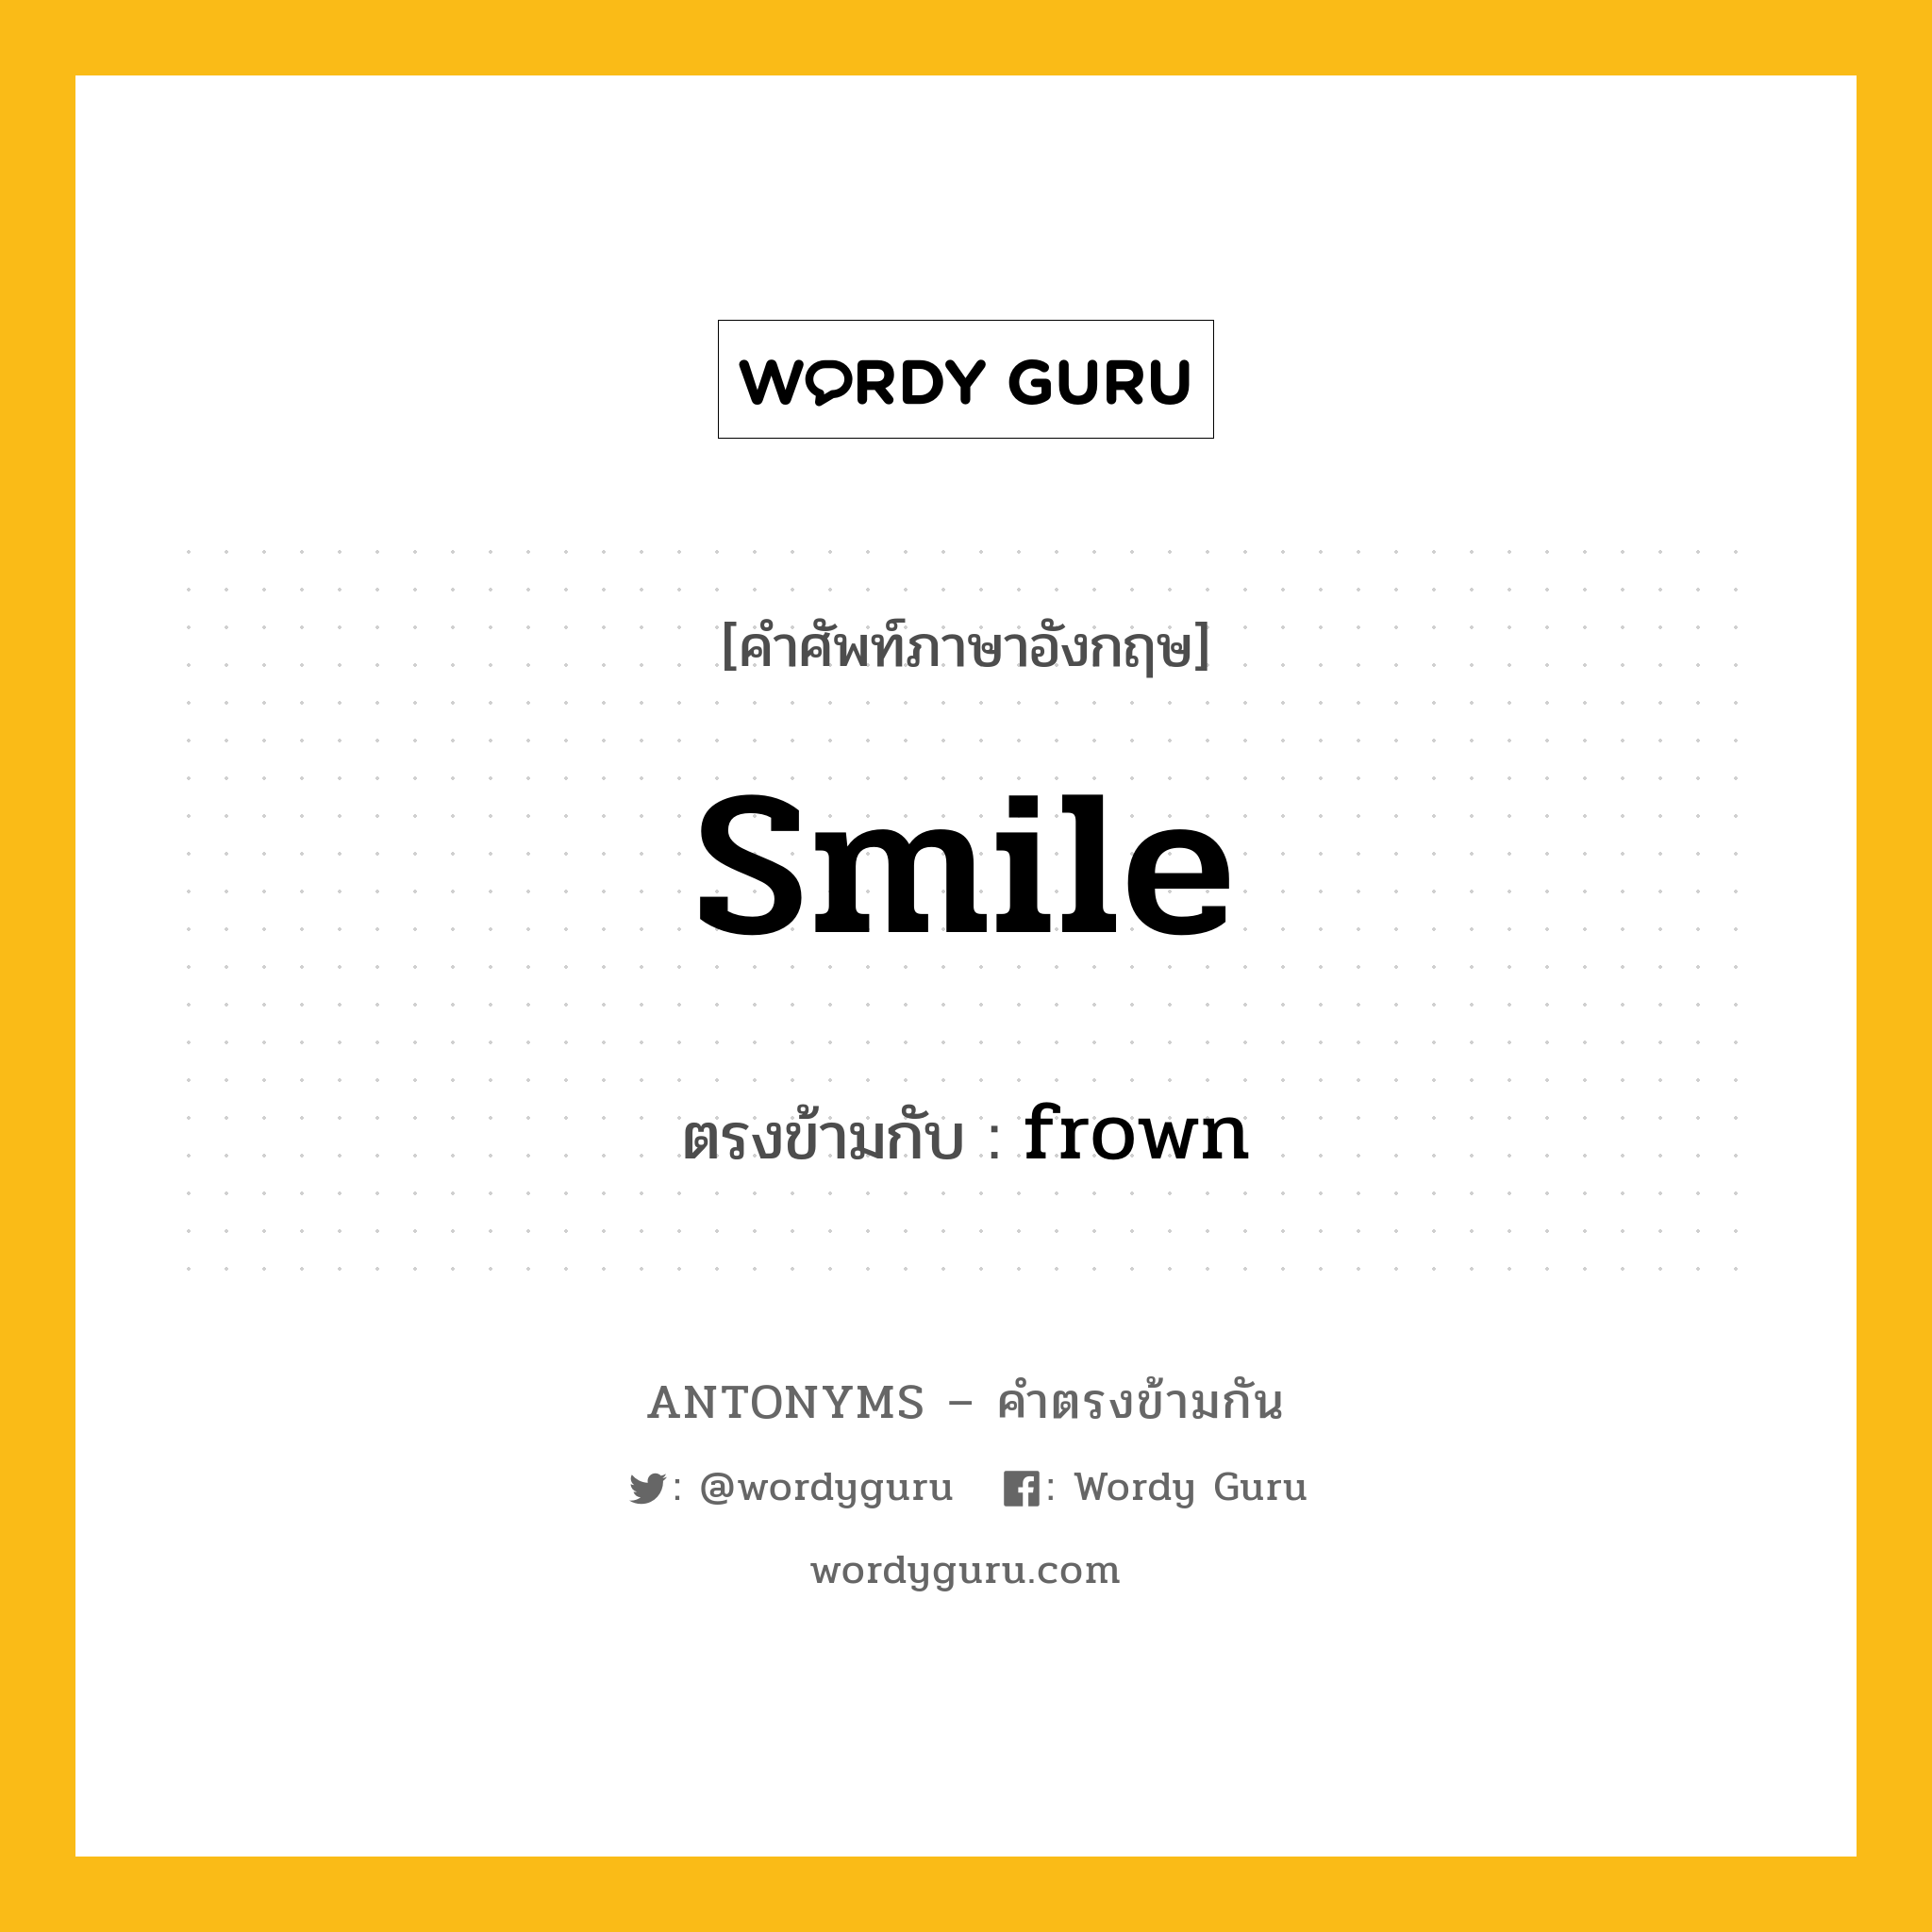 smile เป็นคำตรงข้ามกับคำไหนบ้าง?, คำศัพท์ภาษาอังกฤษ smile ตรงข้ามกับ frown หมวด frown